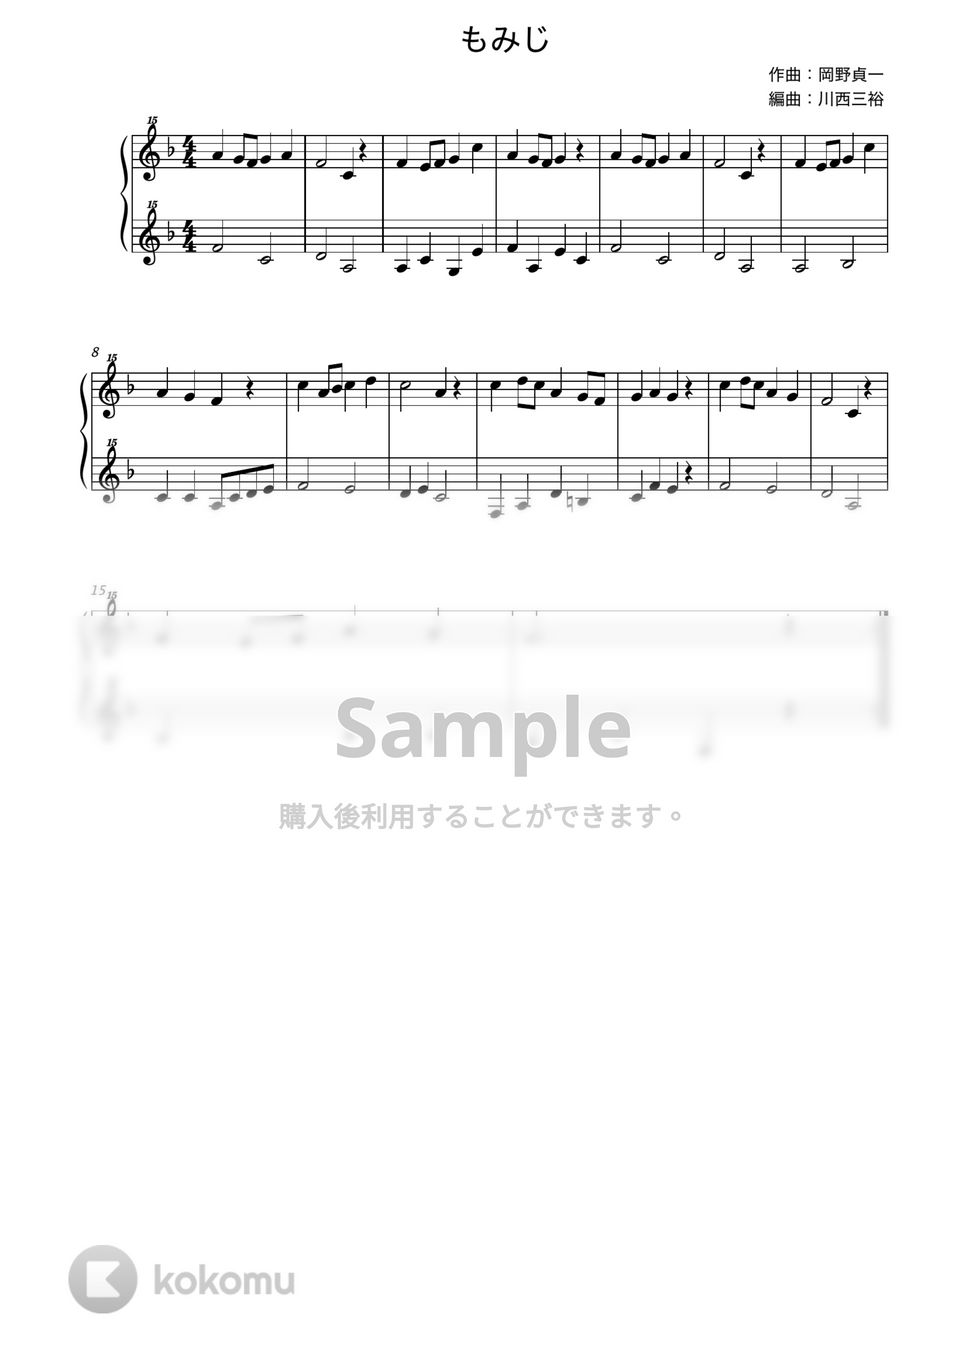 もみじ (トイピアノ / 25鍵盤 / 童謡) by 川西三裕